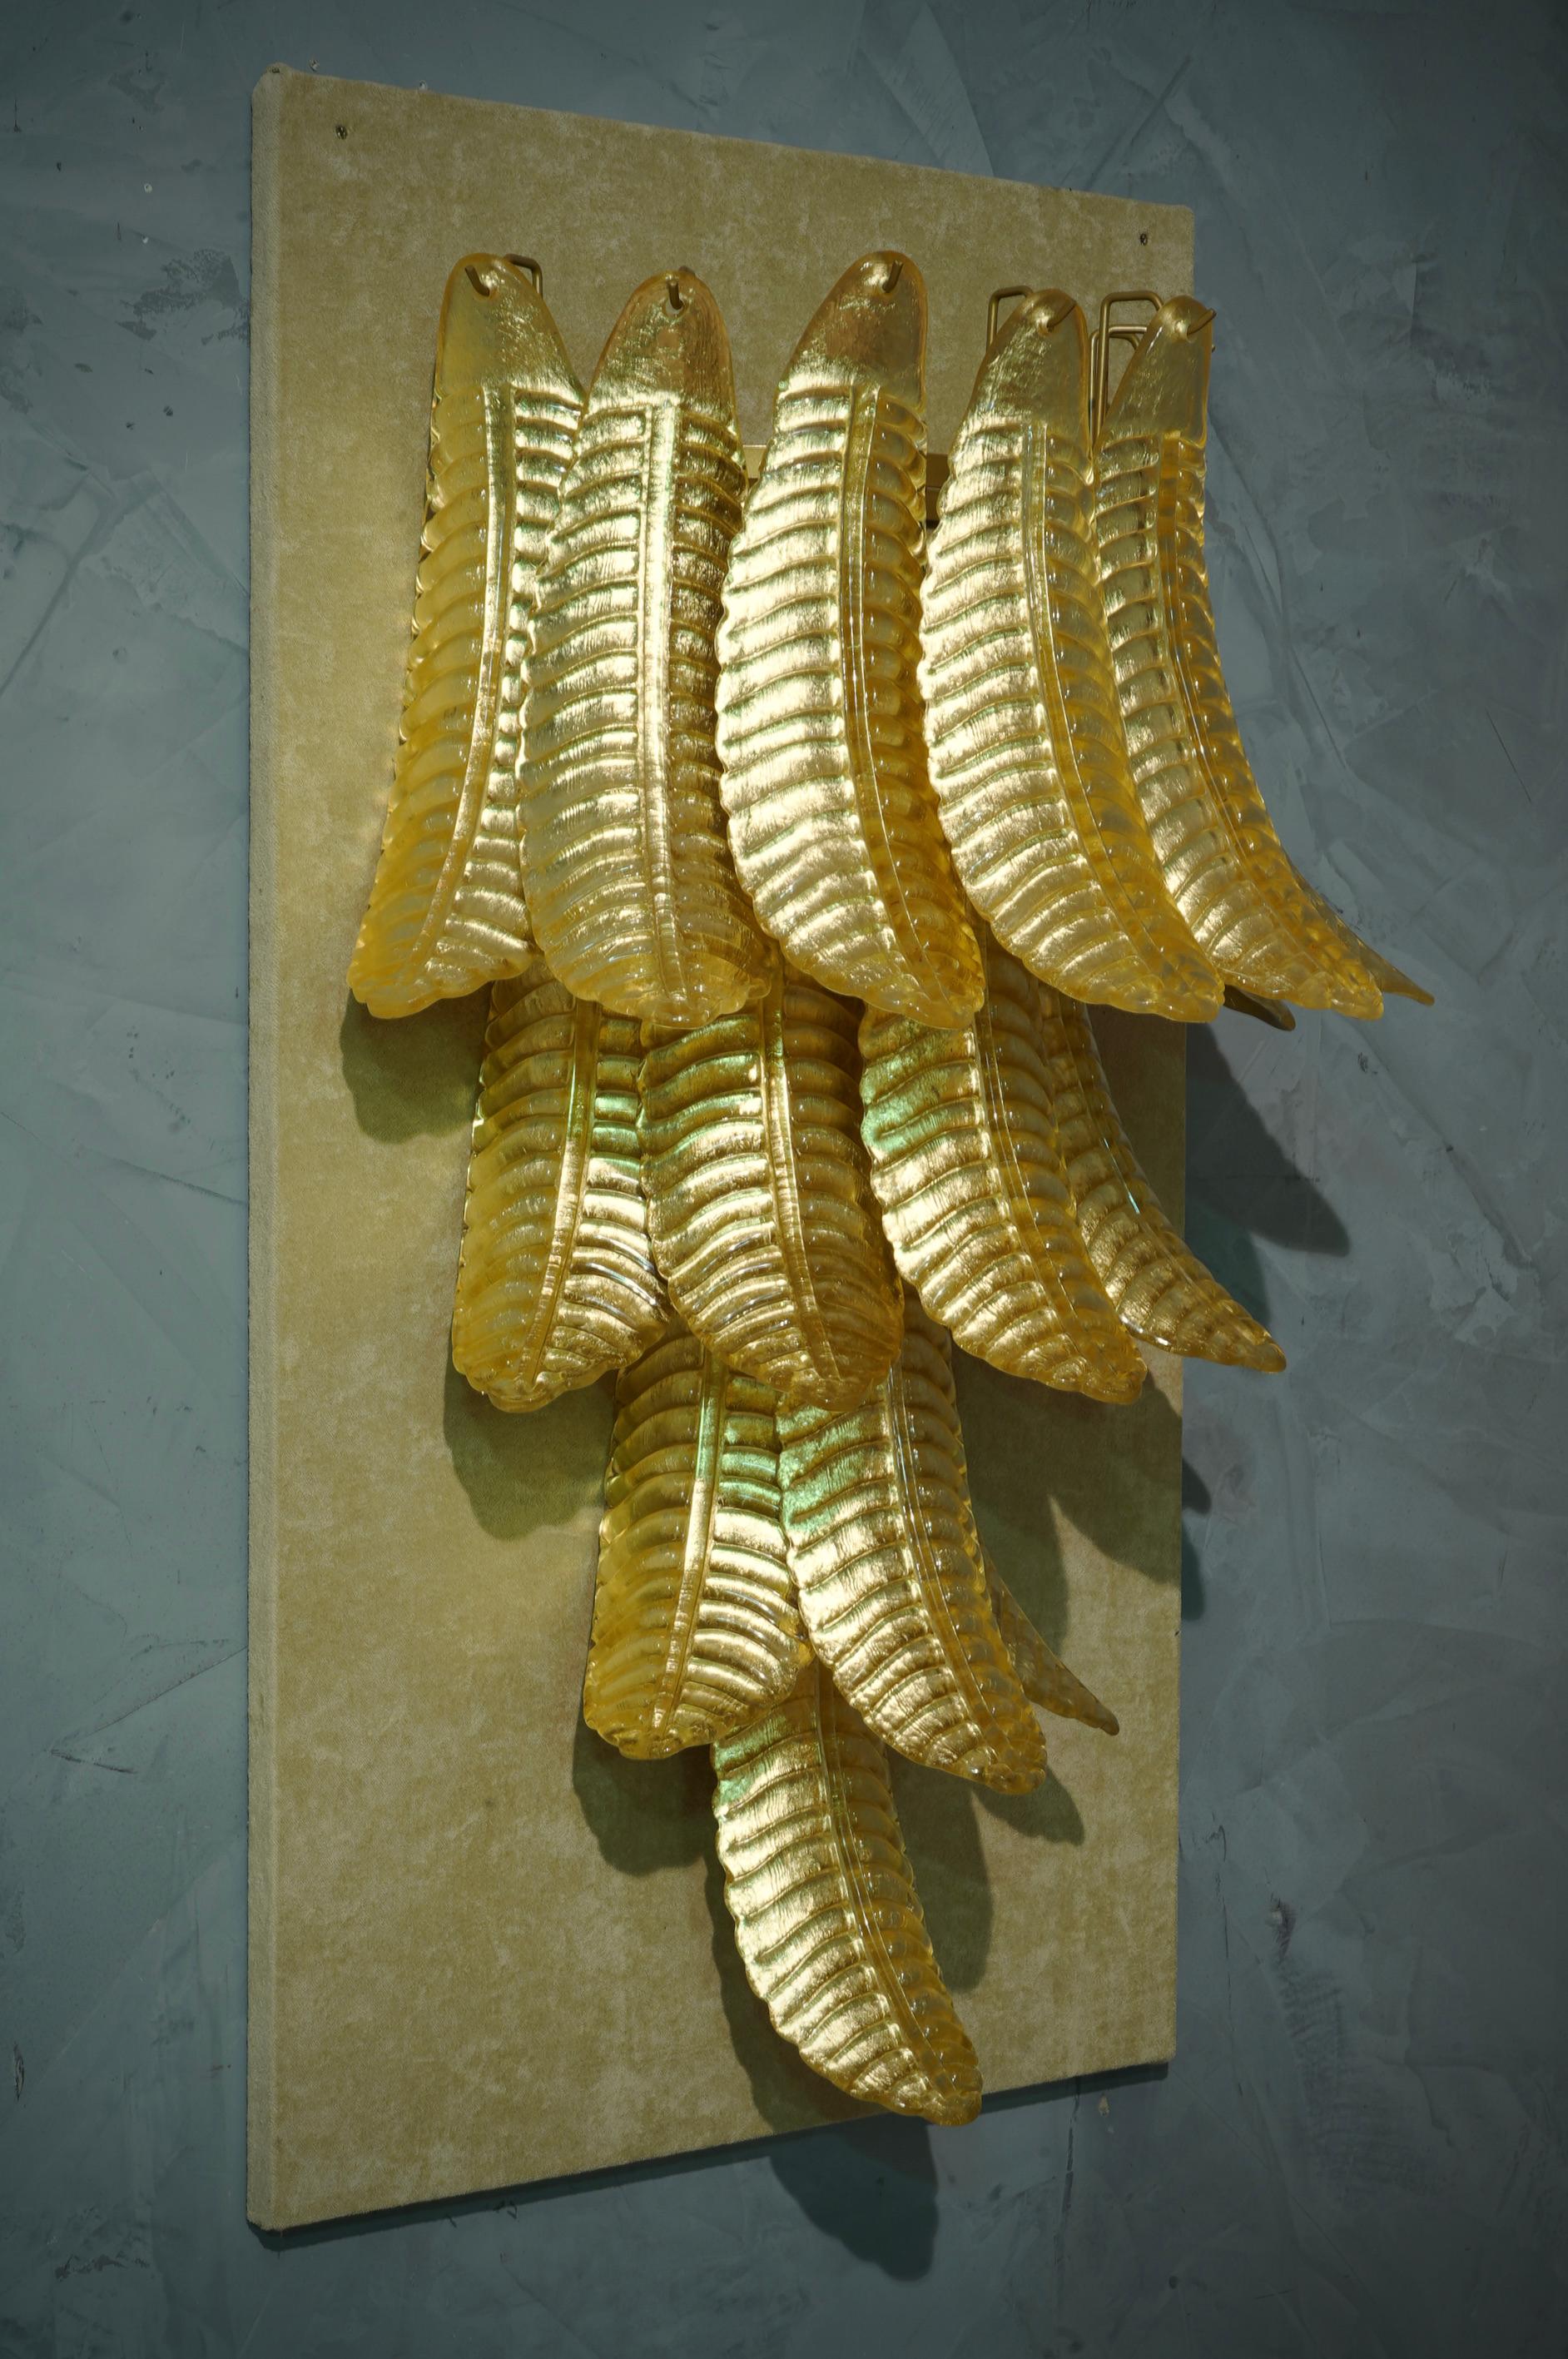 Sechzehn wunderschöne Blätter aus klassischem goldfarbenem Murano-Glas. Reiches Design für eine wirklich schöne Wandleuchte. Schlicht und elegant im Stil von Mazzega.

Die Applikation besteht aus einer Reihe von sechzehn goldenen